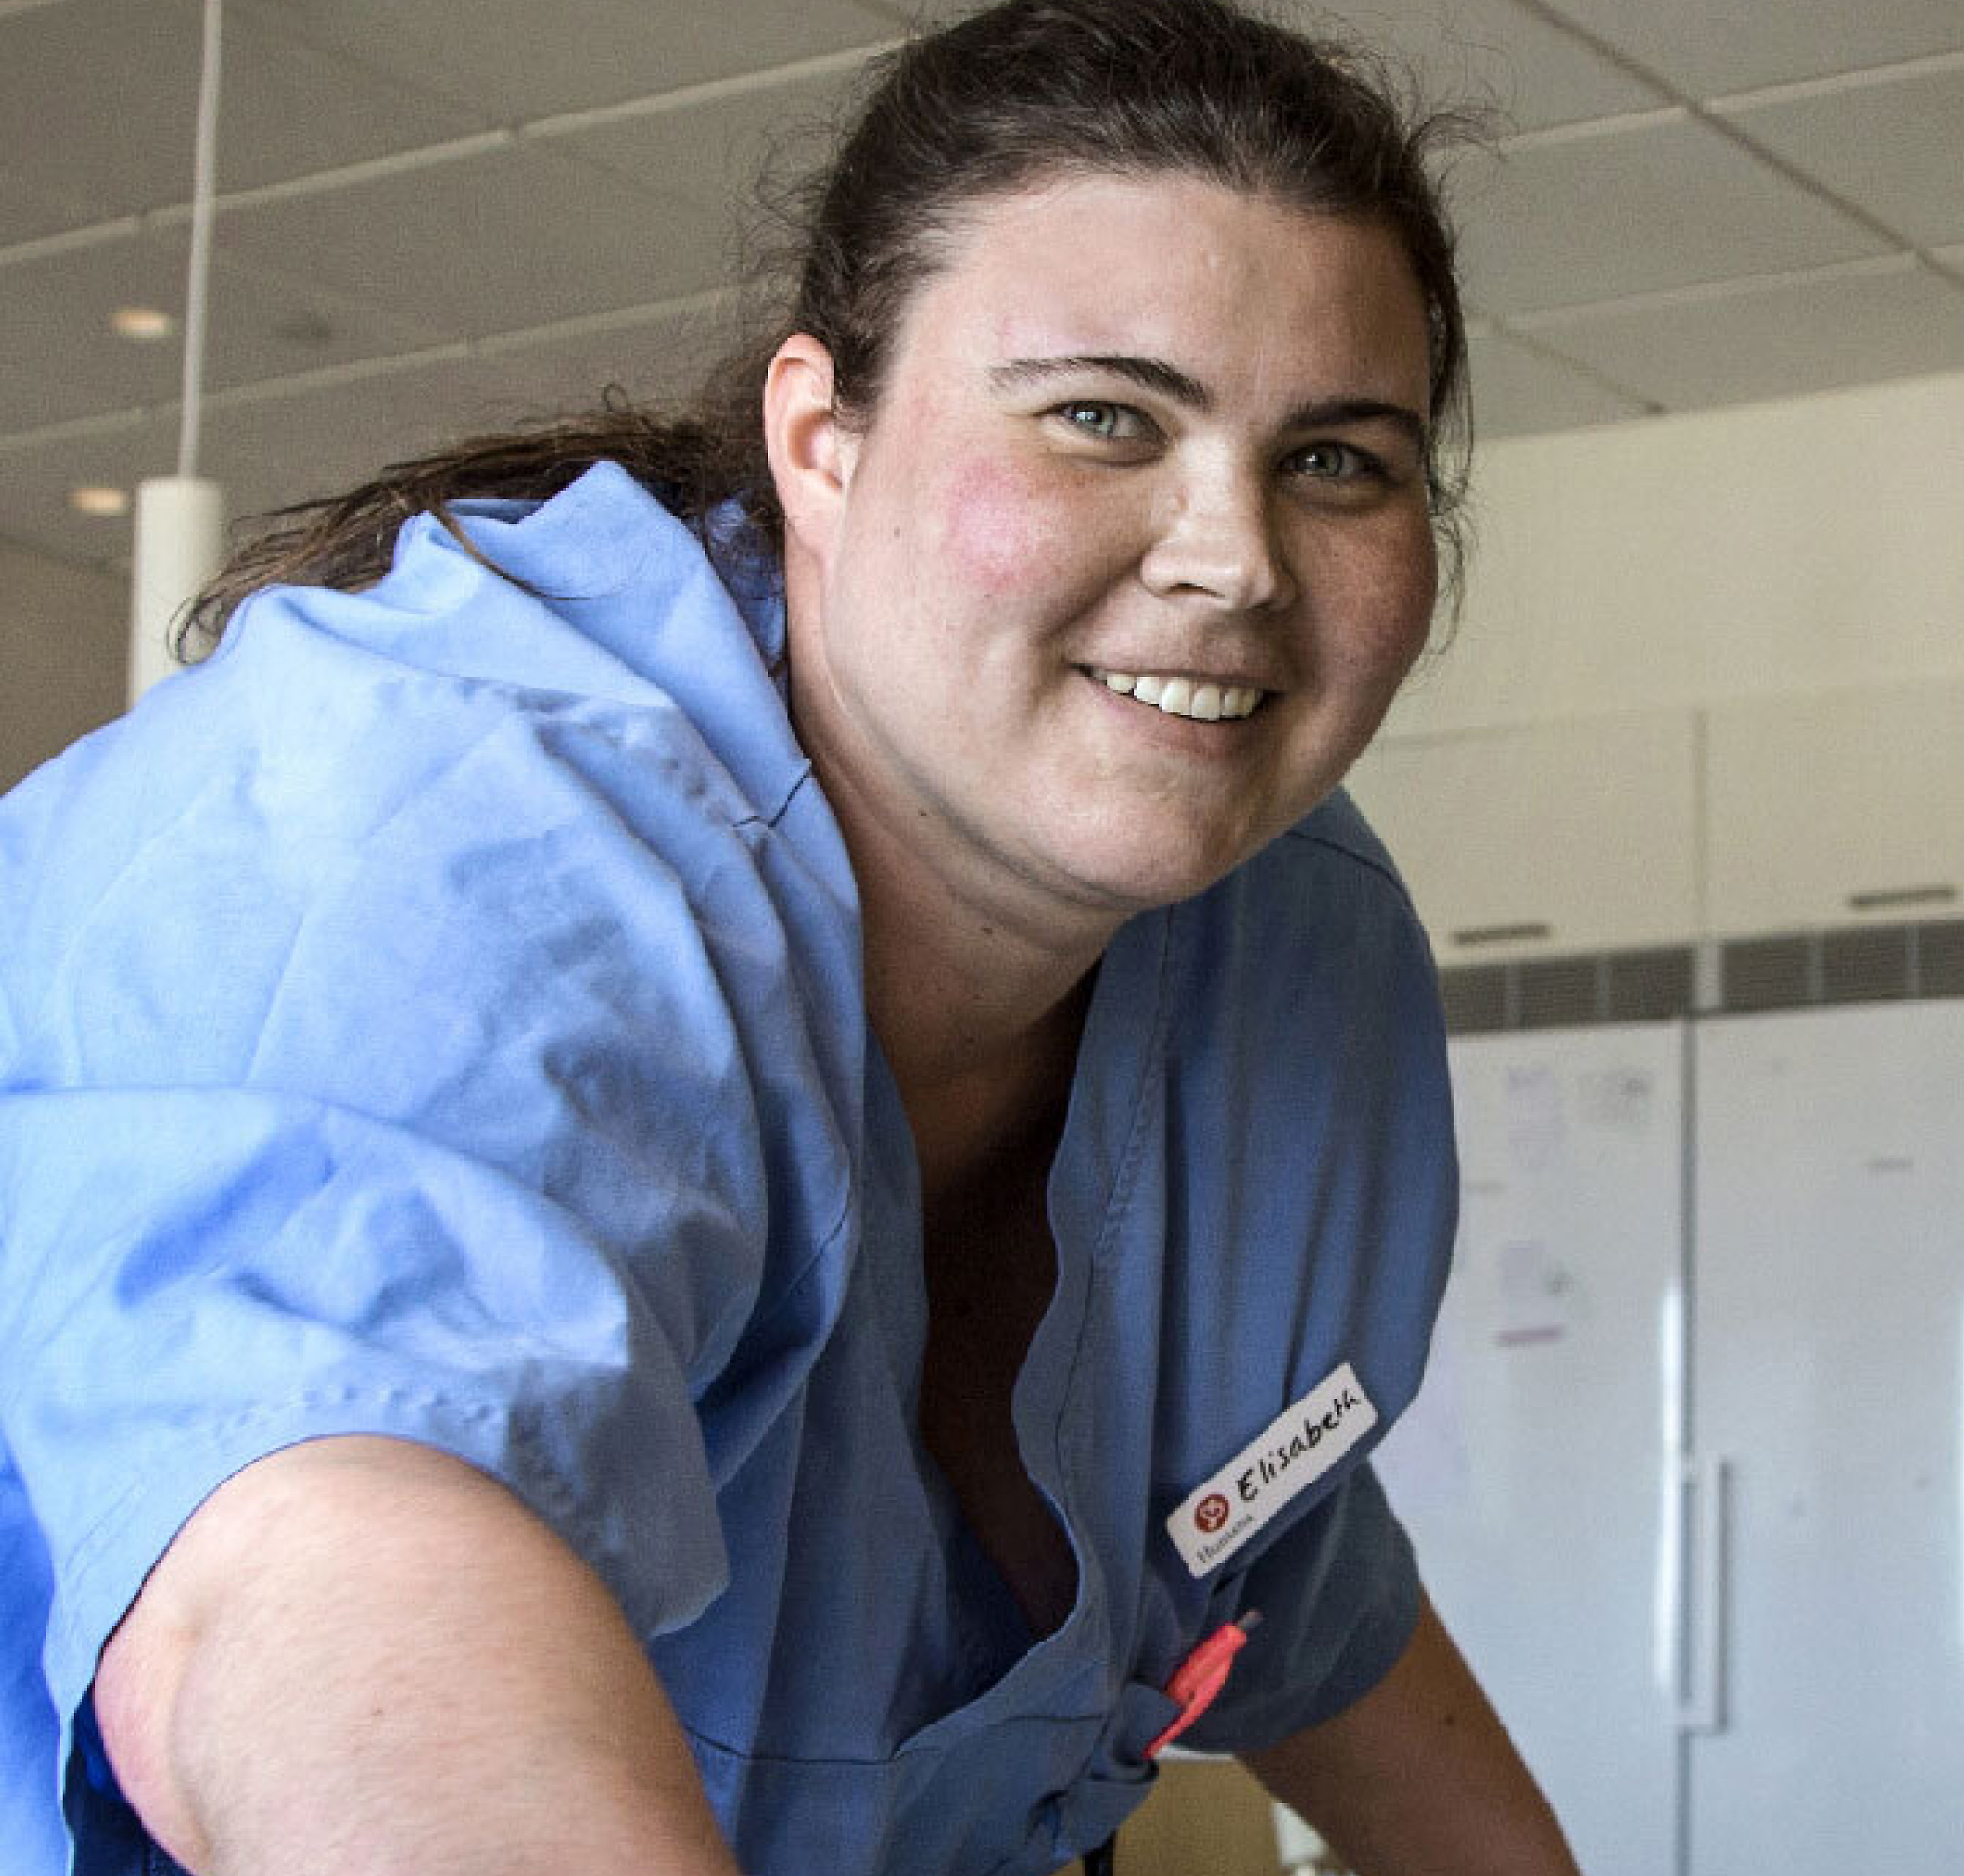 Pielęgniarka z plakietką z napisem „Elizabeth” uśmiecha się w niebieskim uniformie, w jasnym, przestronnym szpitalu.